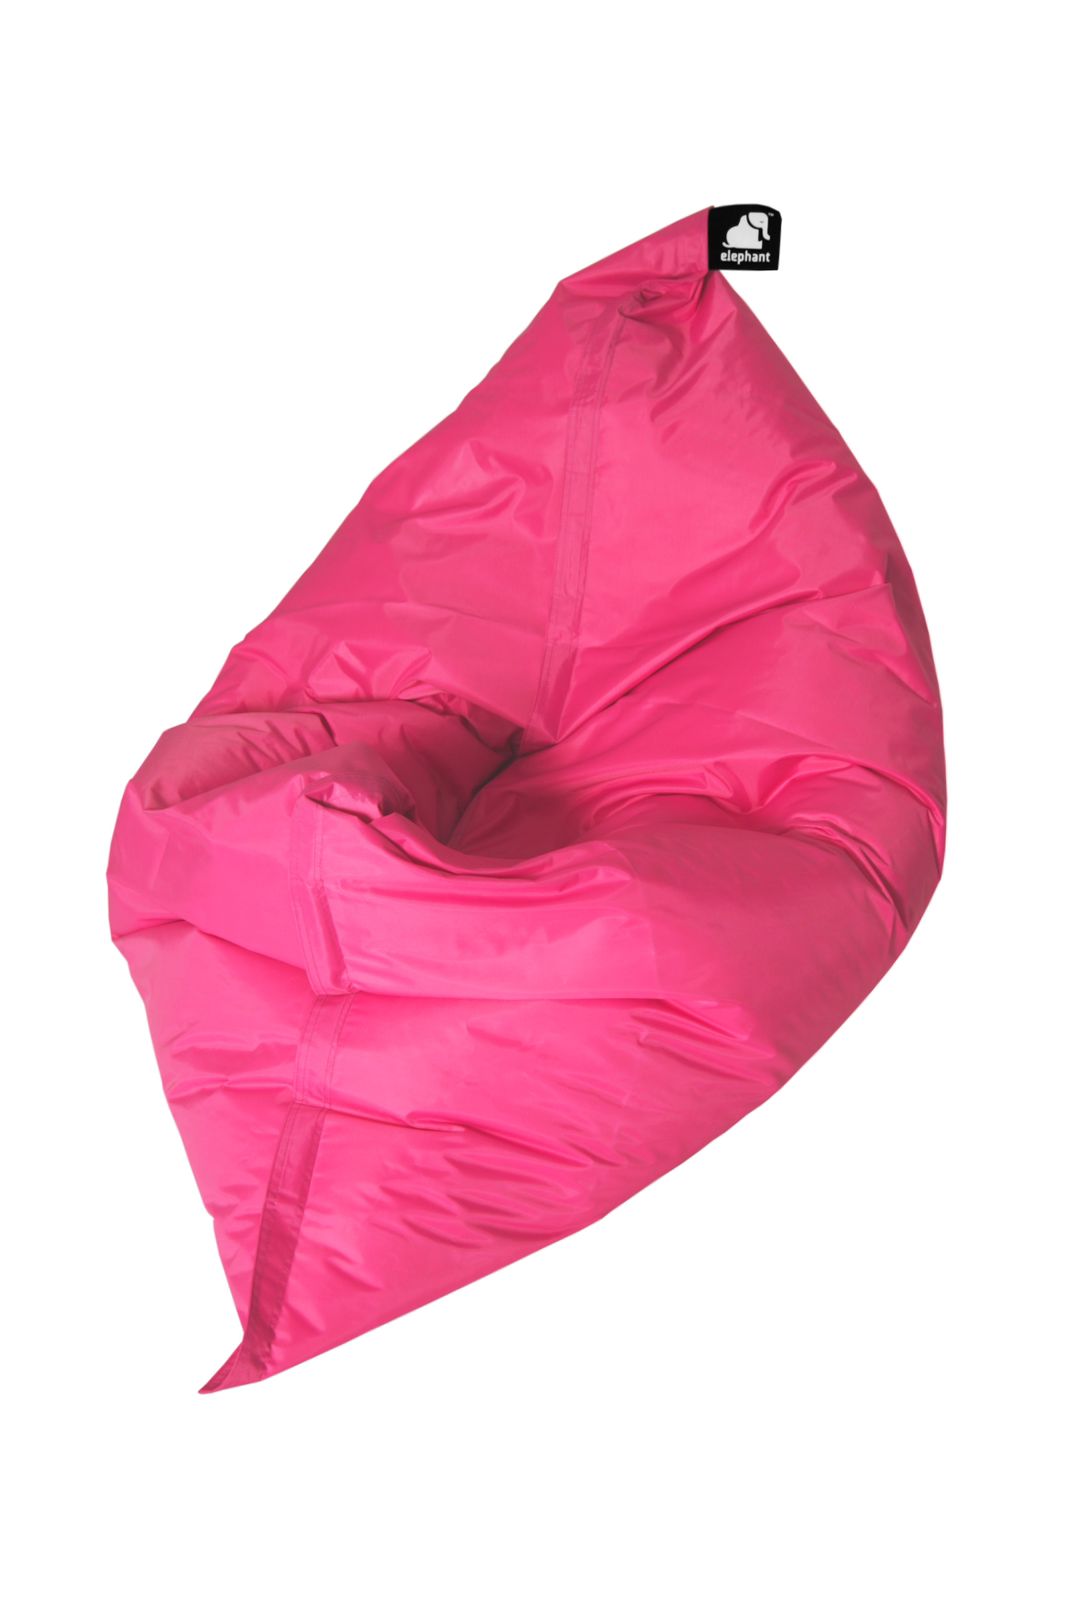 Elephant Jumbo Bean Bag - Shocking Pink